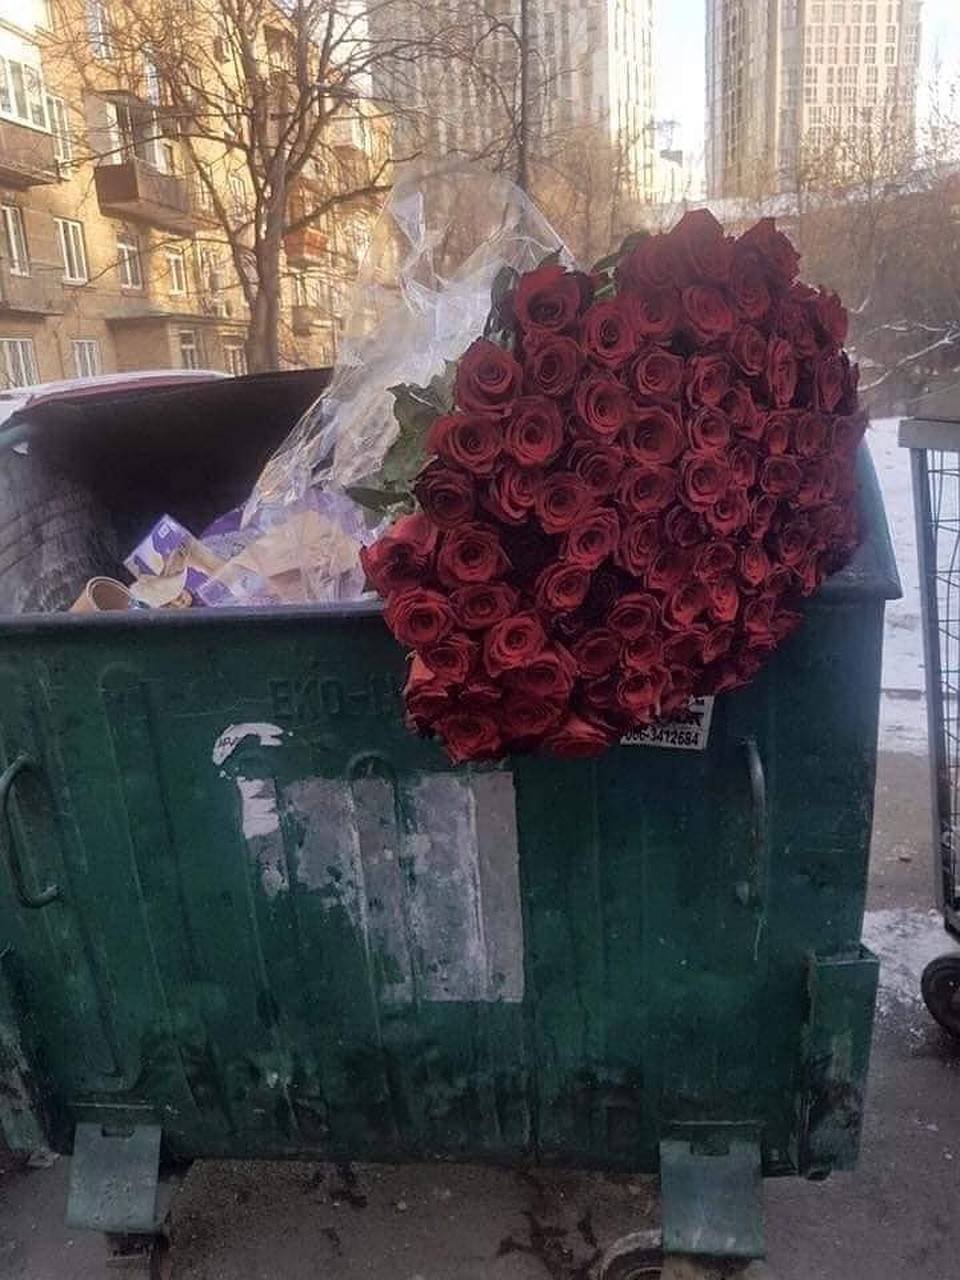 Таджик принес цветы